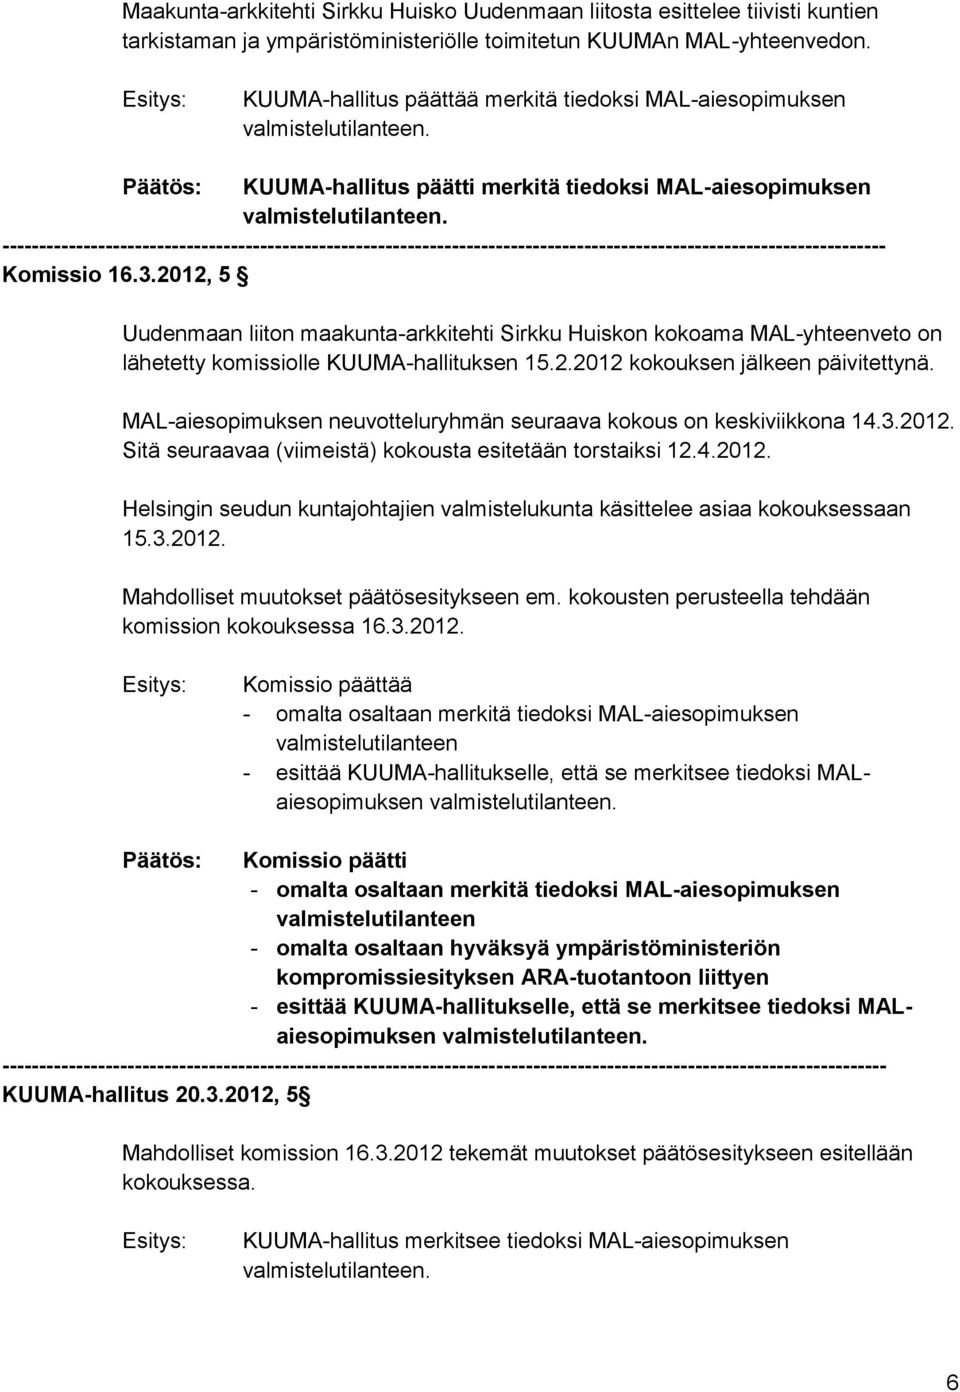 2012, 5 Uudenmaan liiton maakunta-arkkitehti Sirkku Huiskon kokoama MAL-yhteenveto on lähetetty komissiolle KUUMA-hallituksen 15.2.2012 kokouksen jälkeen päivitettynä.